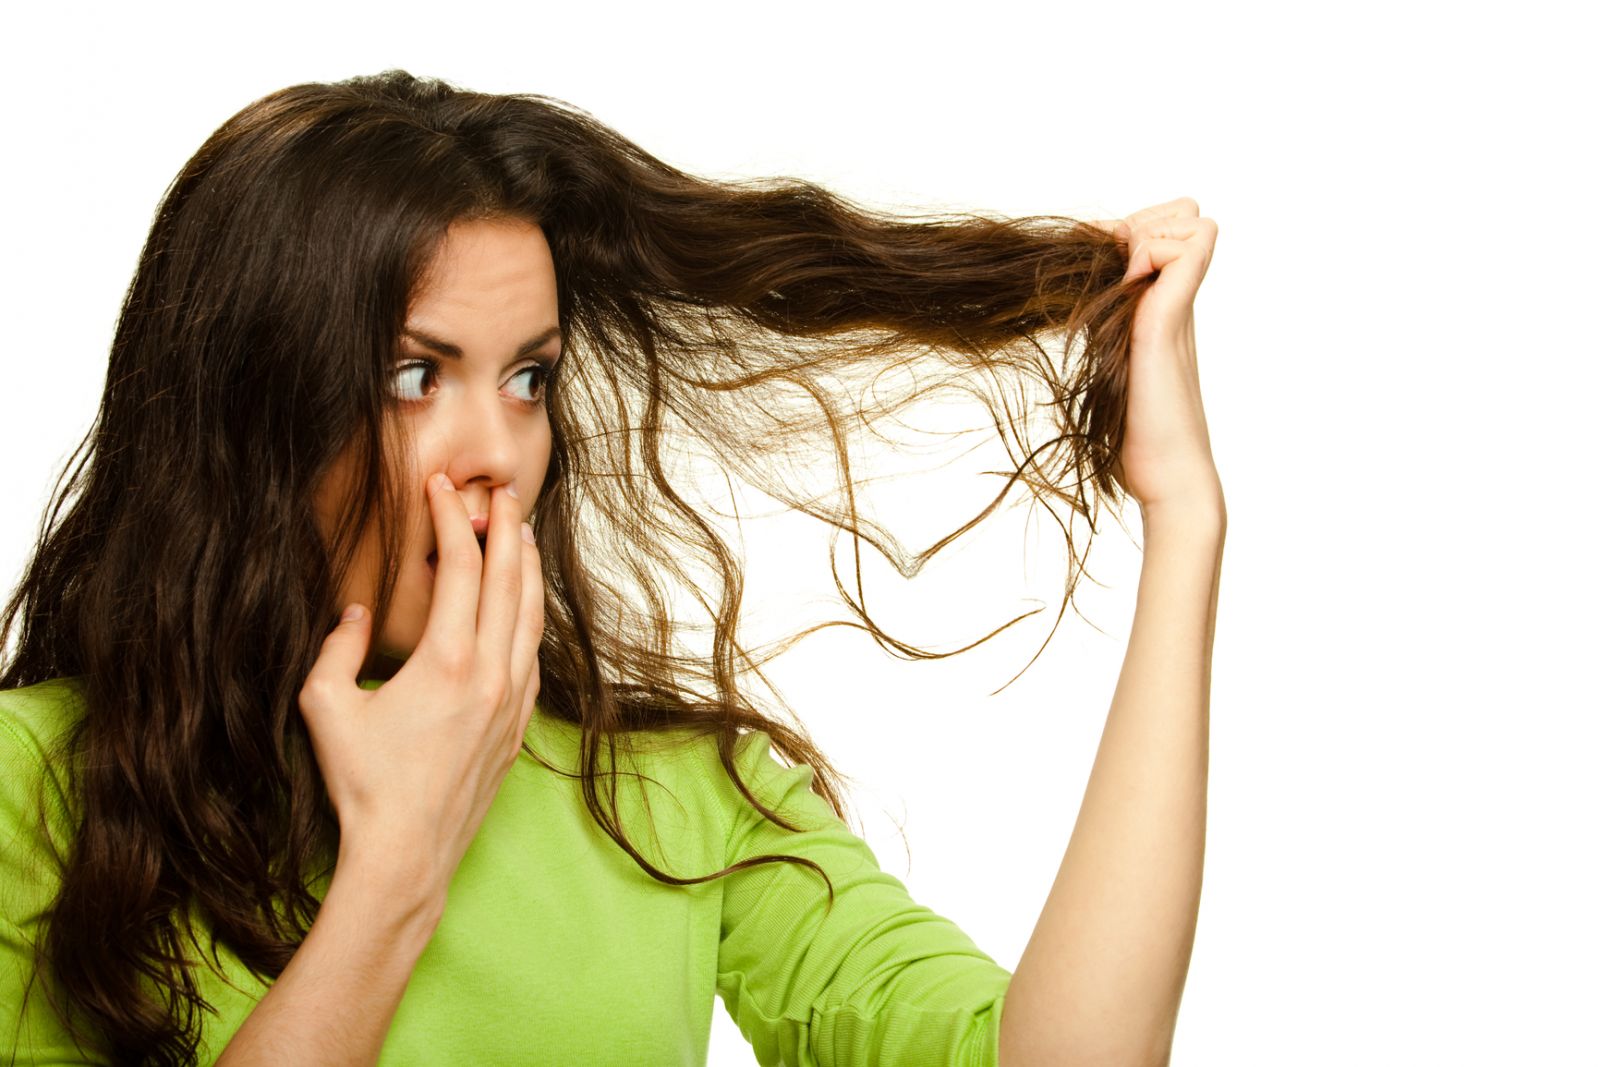 Как улучшить состояние волос и ресниц